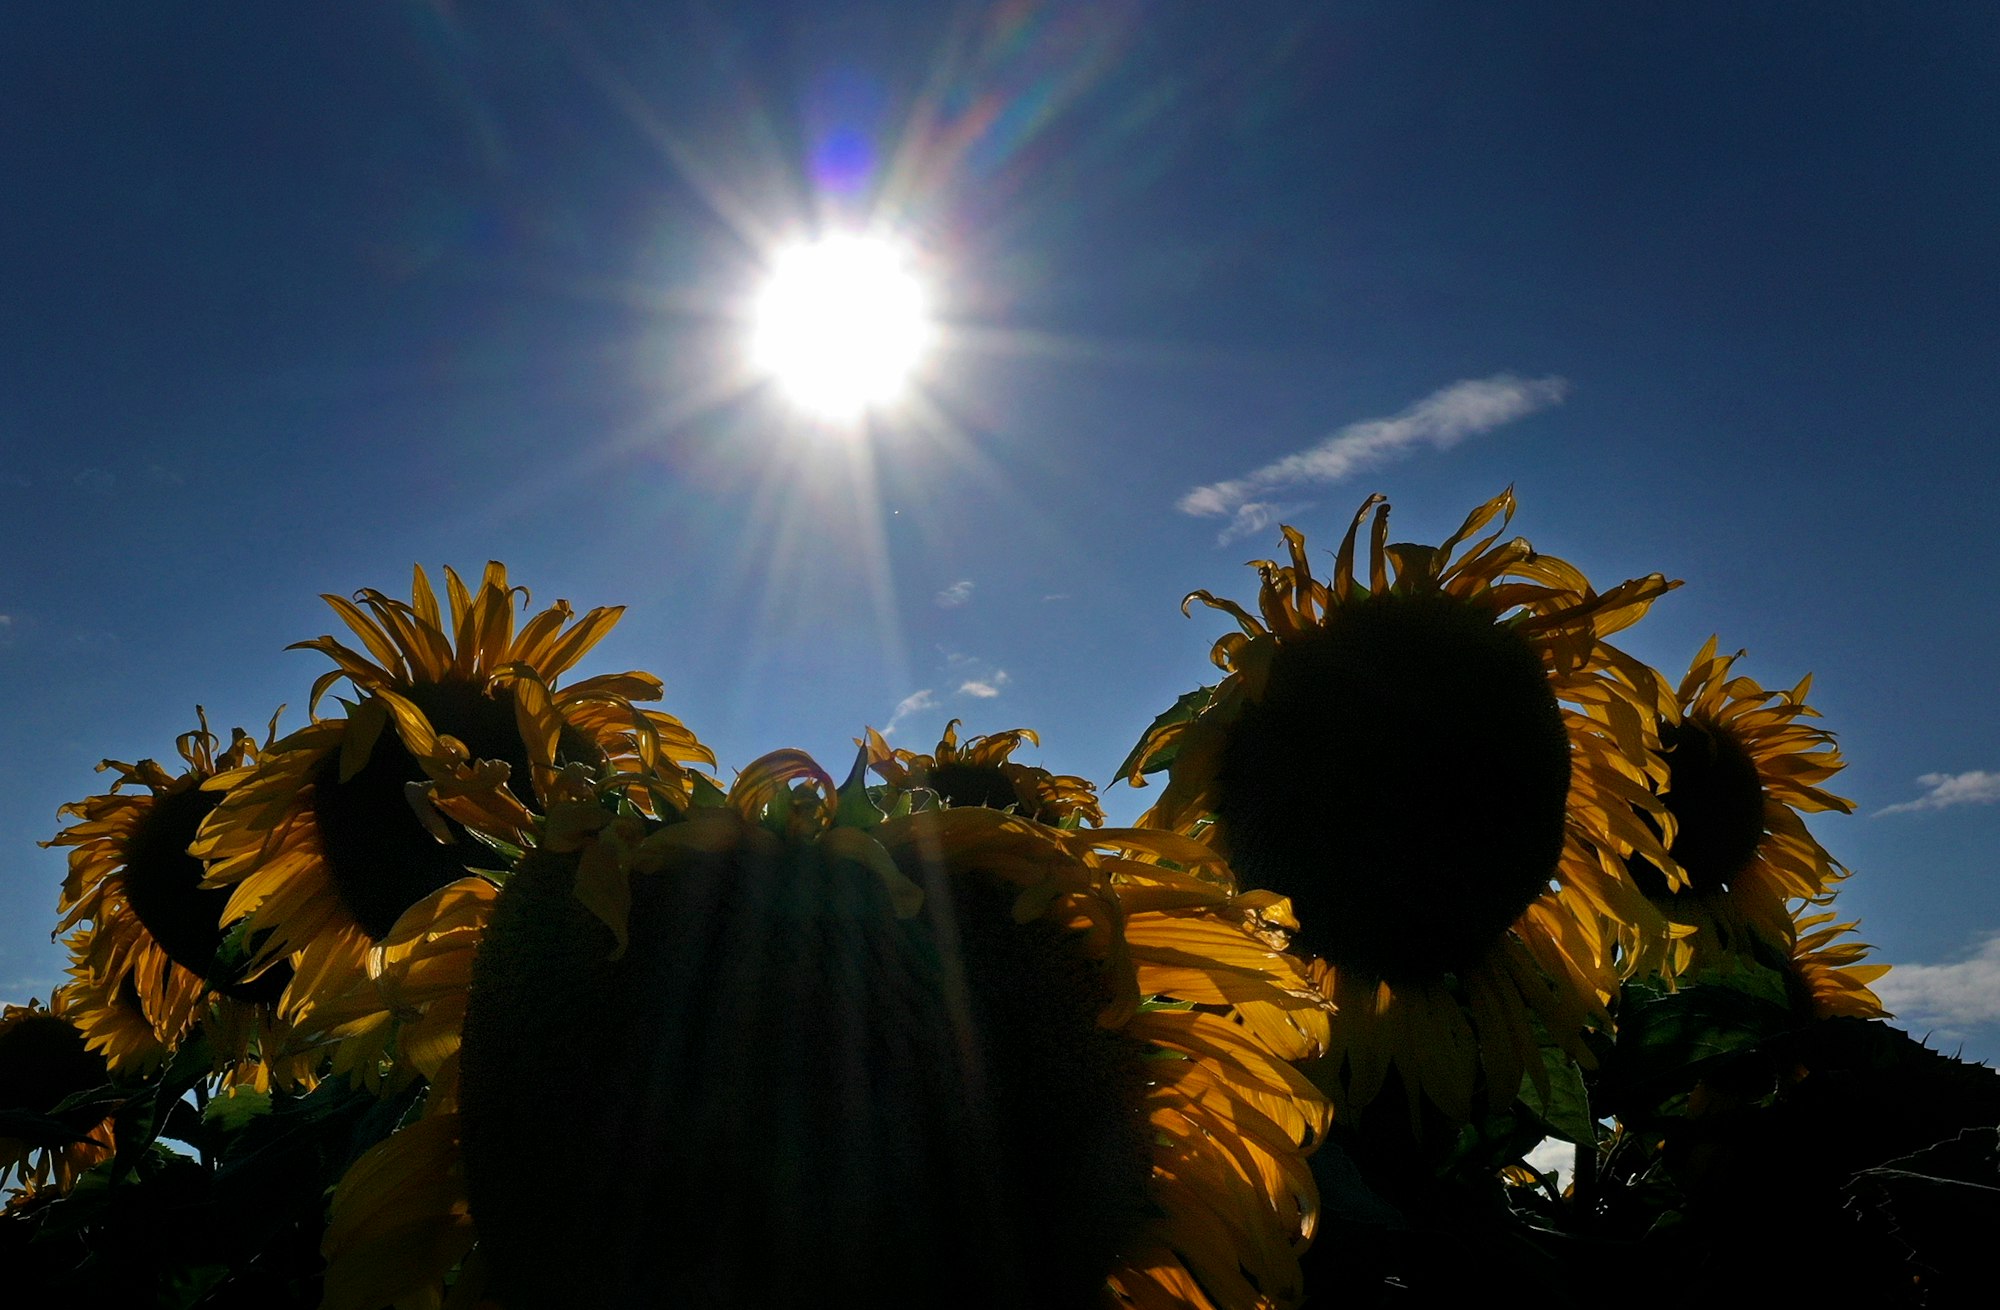 Das Wetter in NRW soll in den kommenden Tagen überwiegend warm und sommerlich werden. Das Symbolbild zeigt ein Sonnenblumenfeld inSeinsheim.